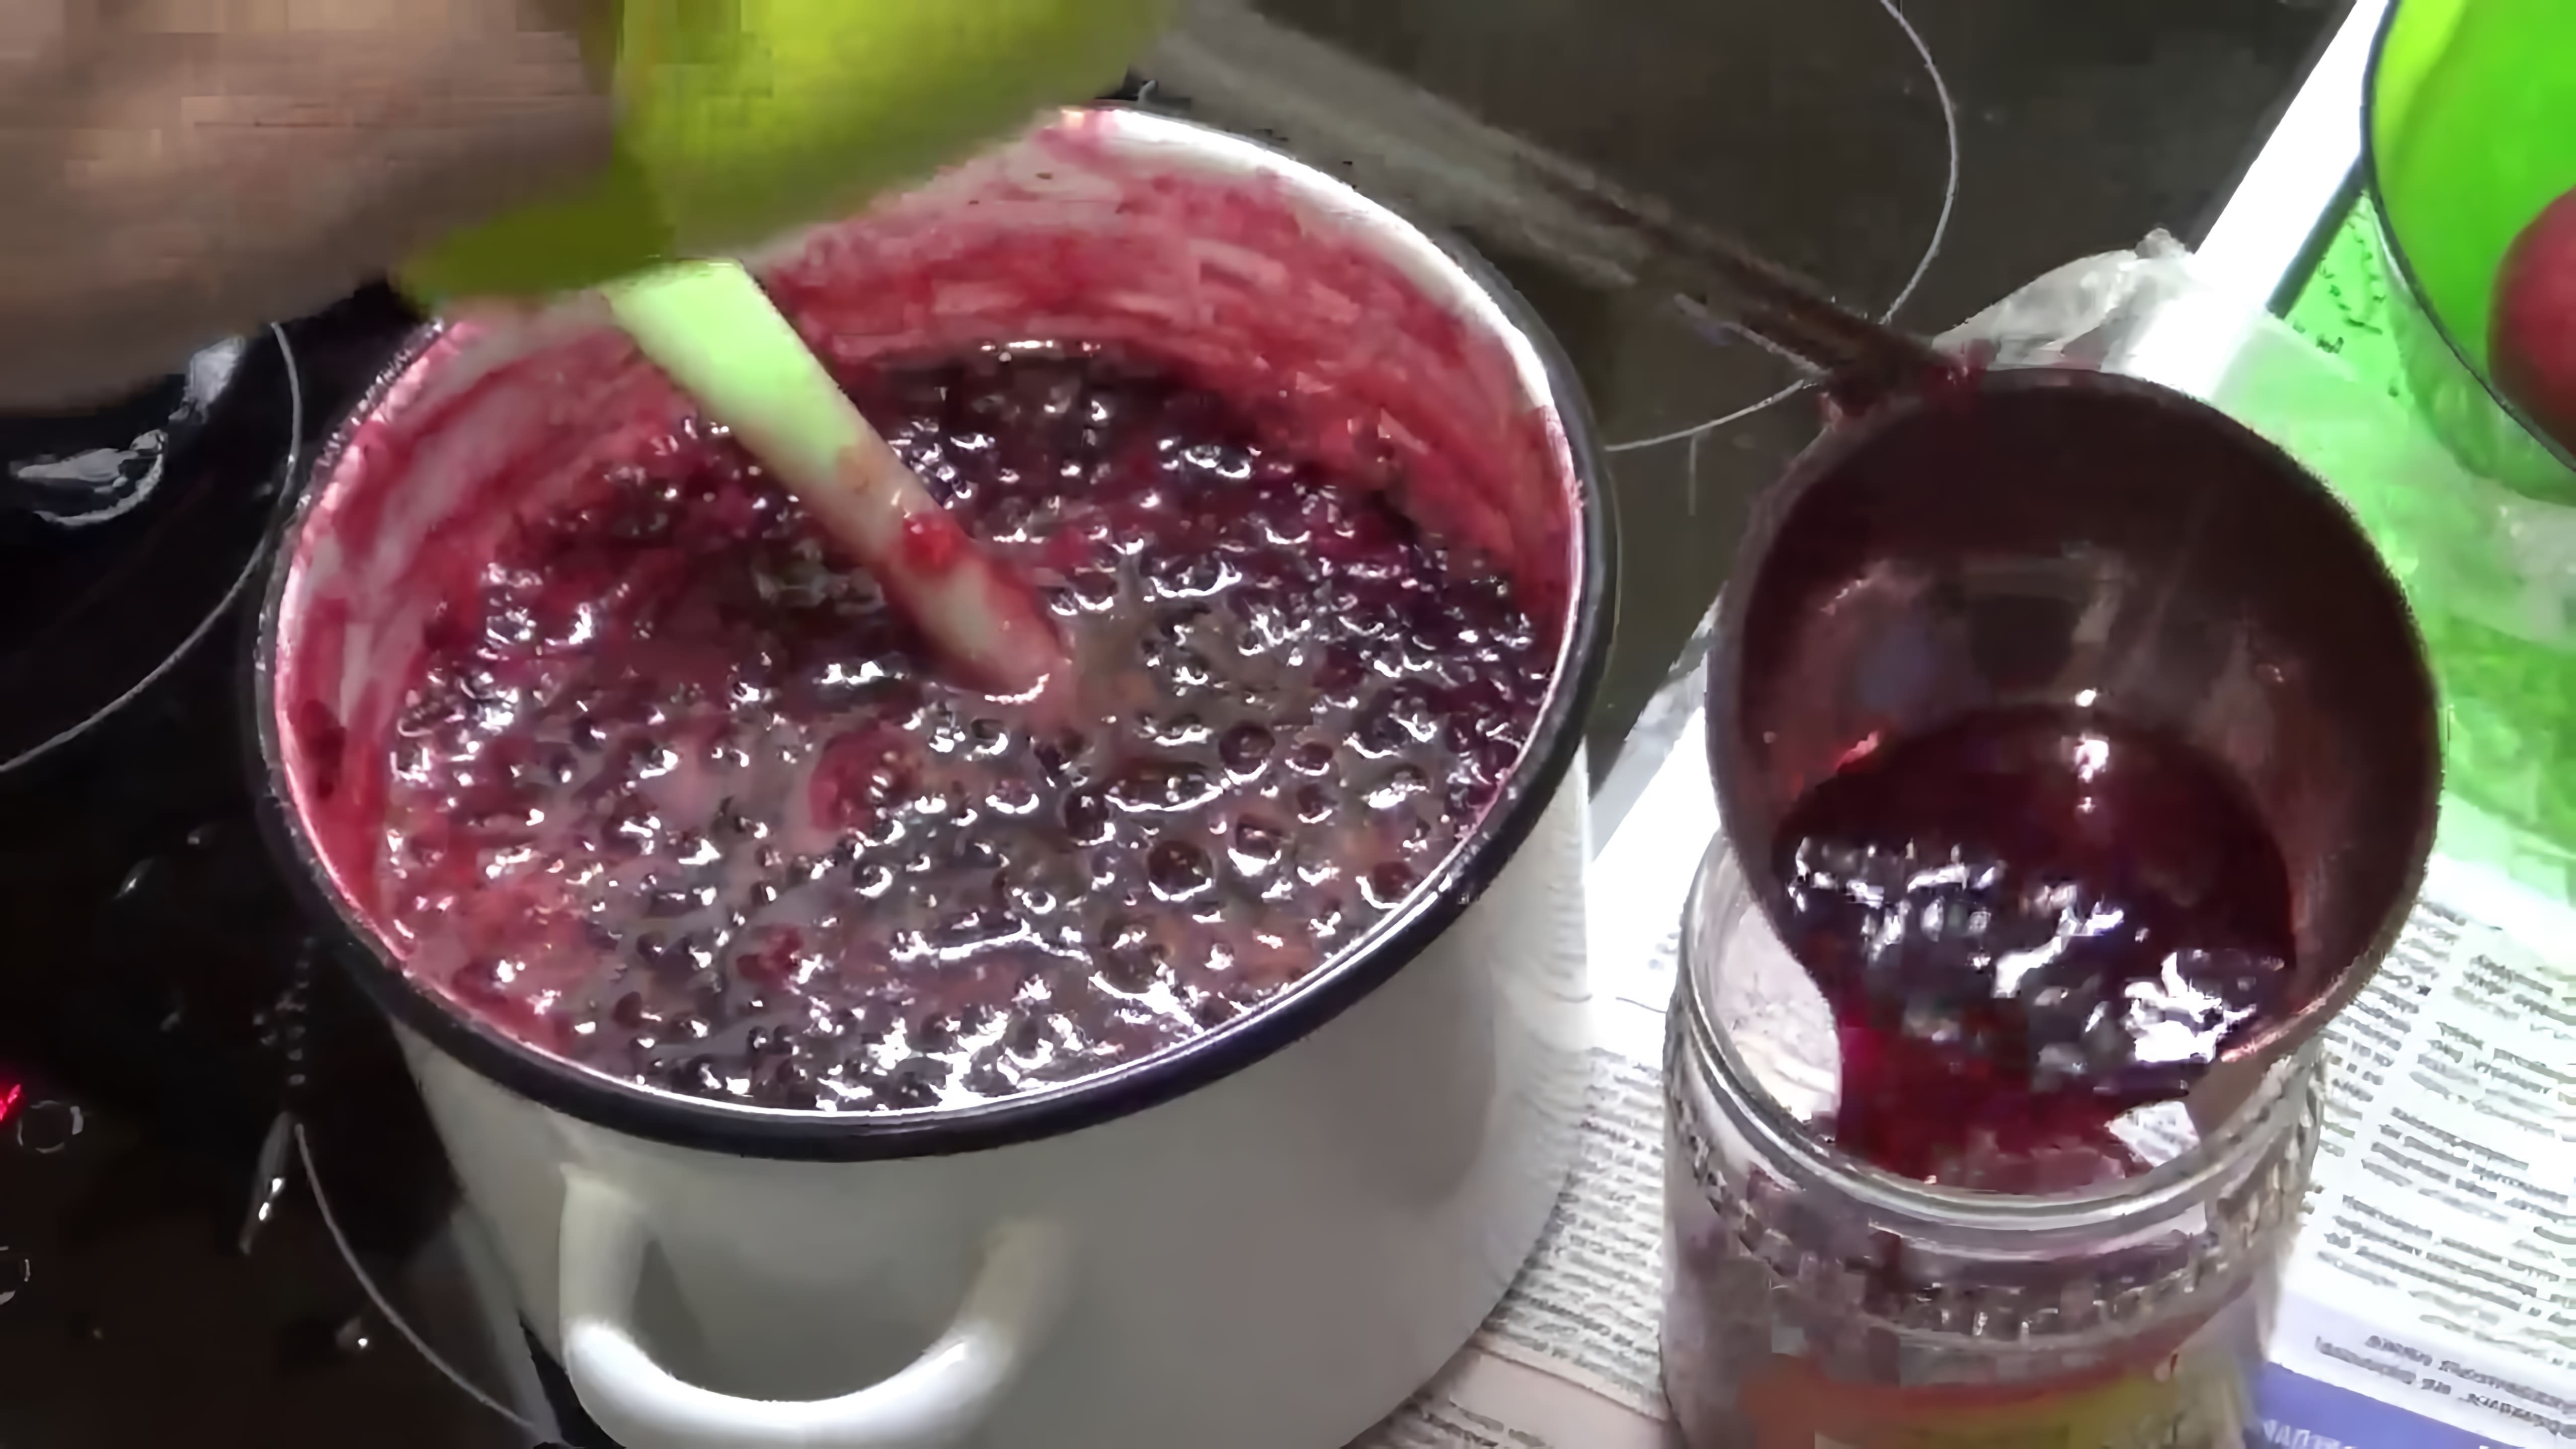 В этом видео демонстрируется процесс приготовления варенья из брусники